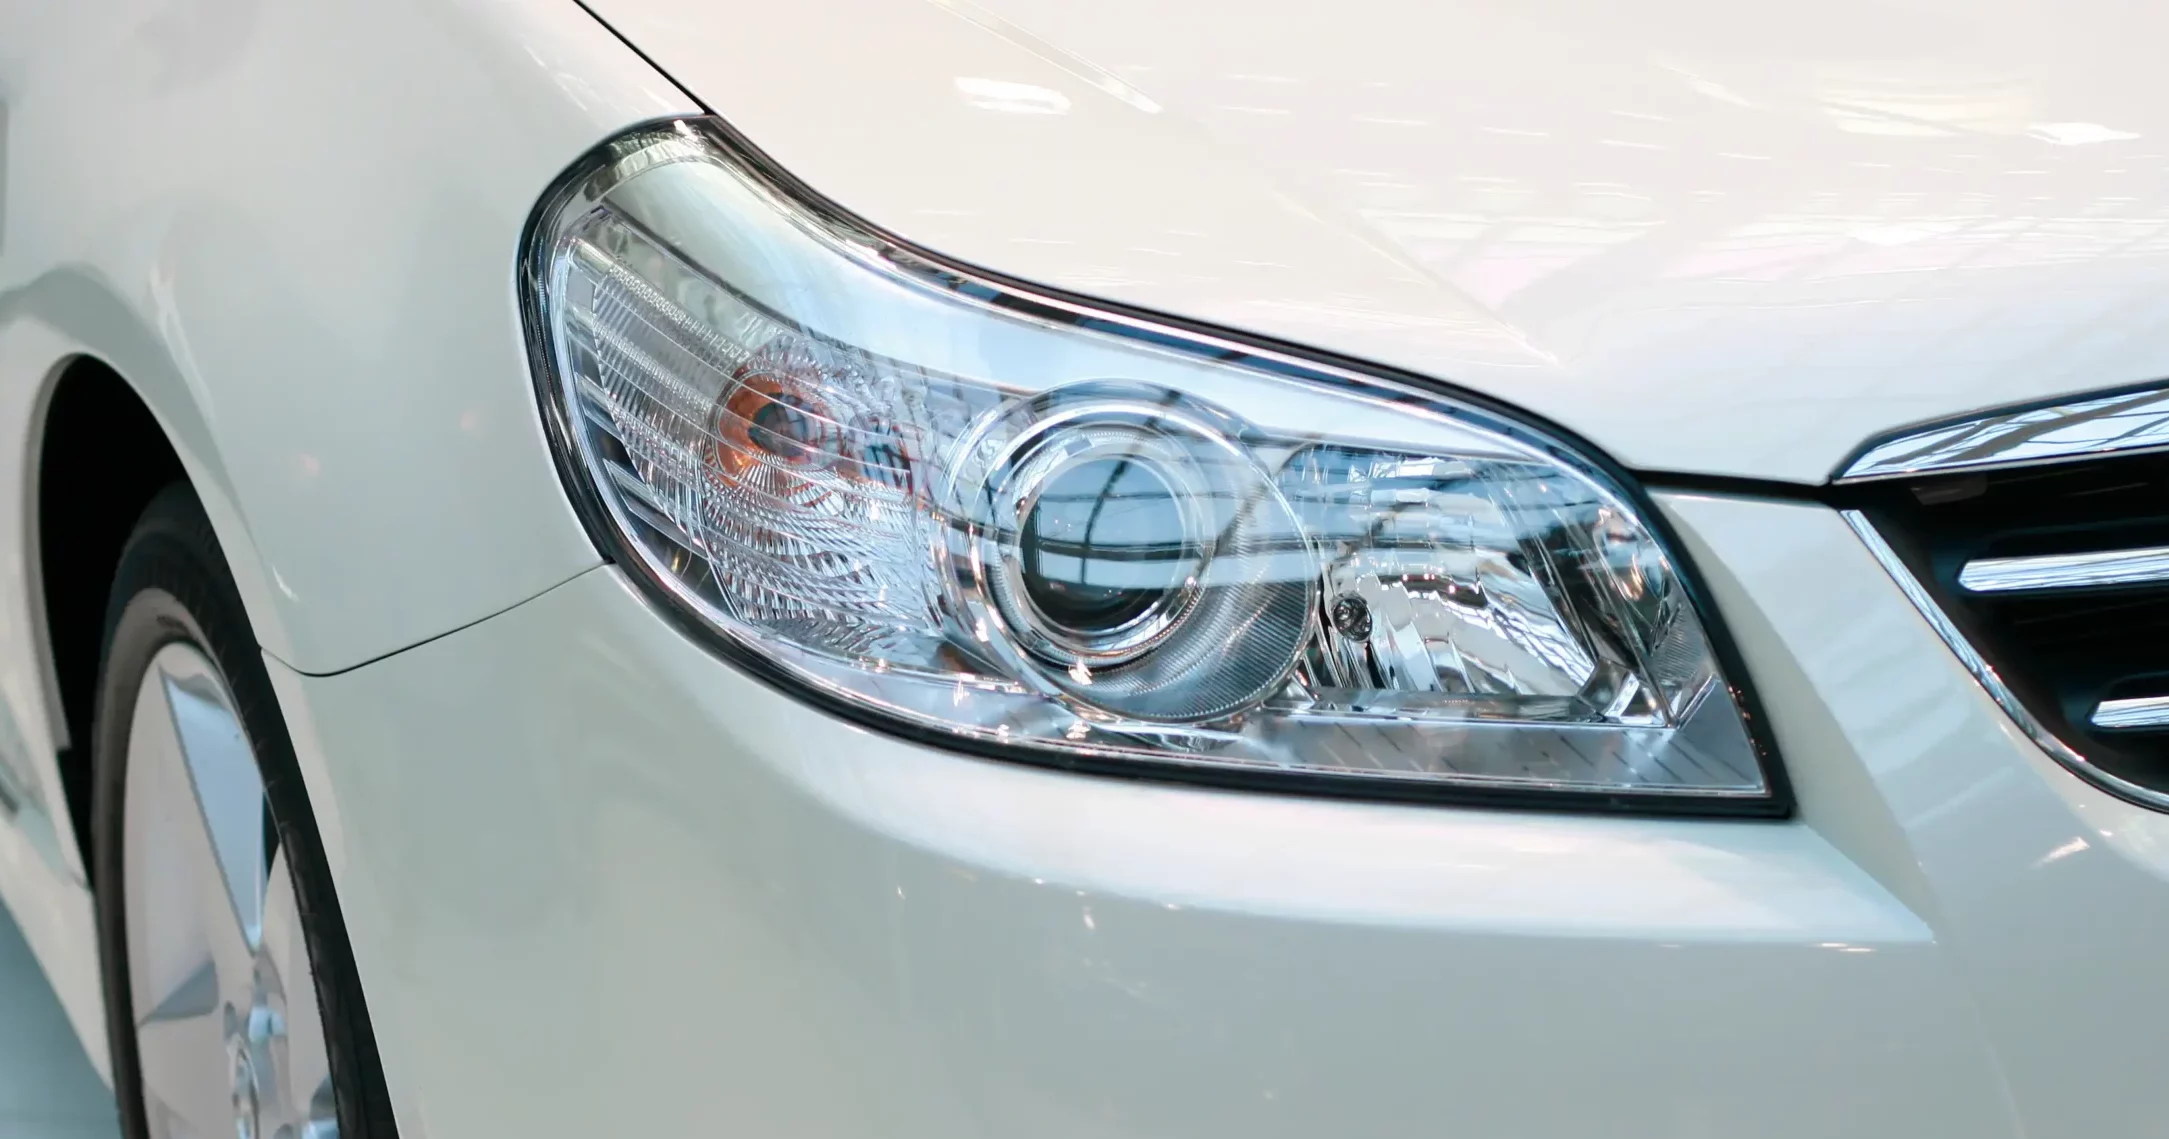 Closeup of shiny car headlights.